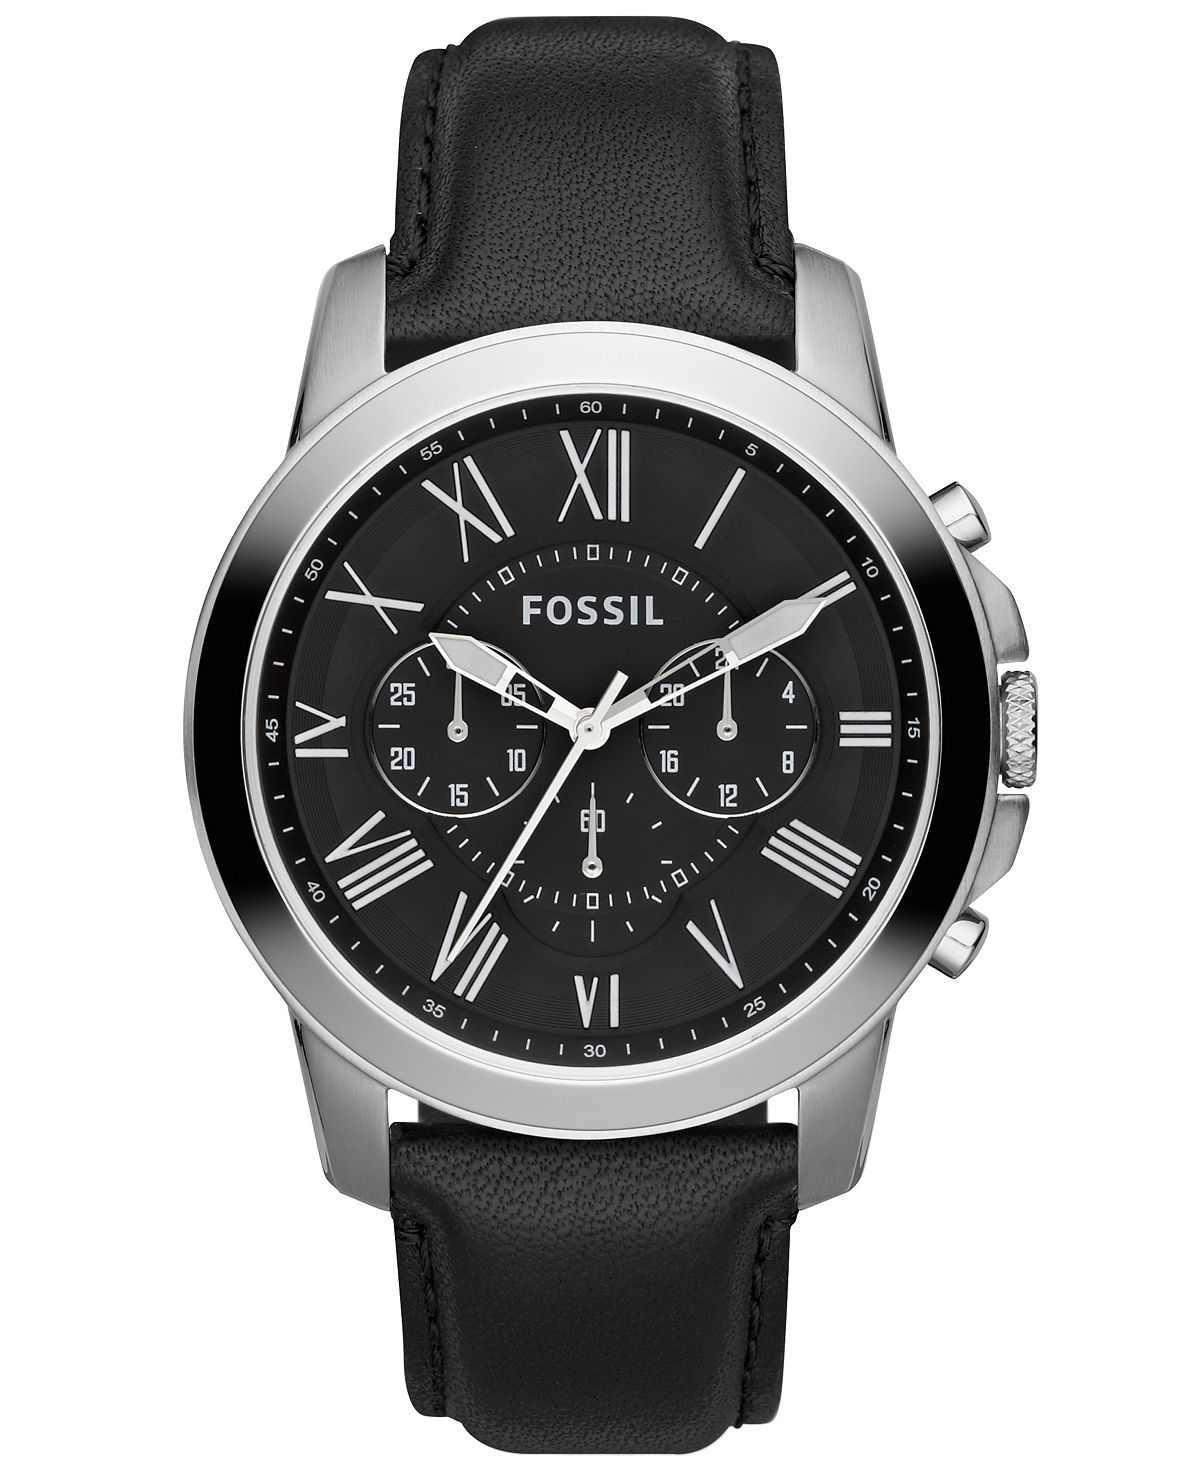 Мужские часы с хронографом Grant с черным кожаным ремешком 44 мм FS4812 Fossil fossil grant me3138